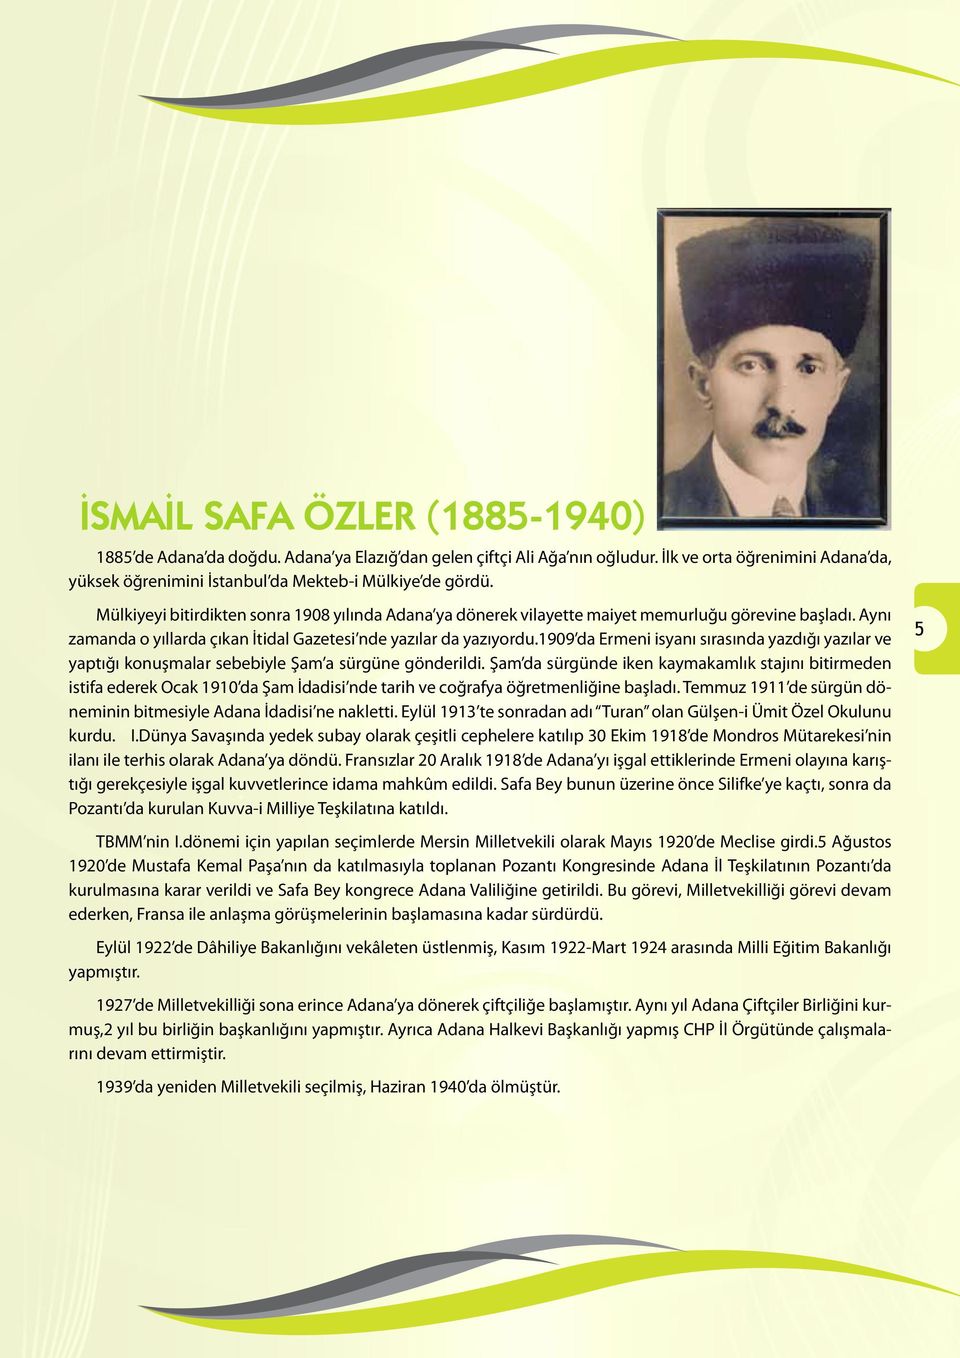 1909 da Ermeni isyanı sırasında yazdığı yazılar ve yaptığı konuşmalar sebebiyle Şam a sürgüne gönderildi.